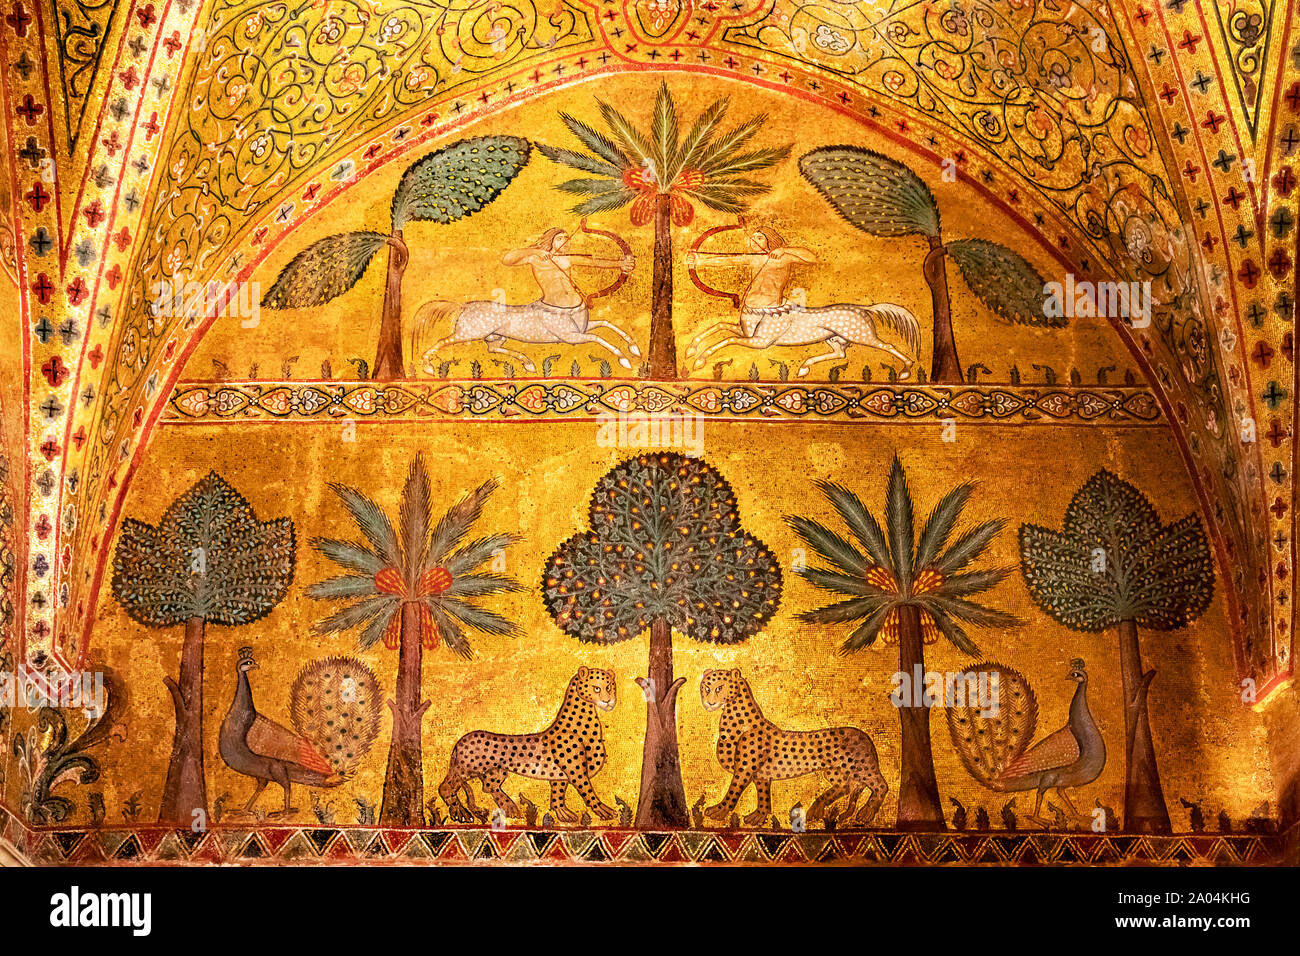 Extraordinary byzantine mosaics in Palermo, Italy Stock Photo